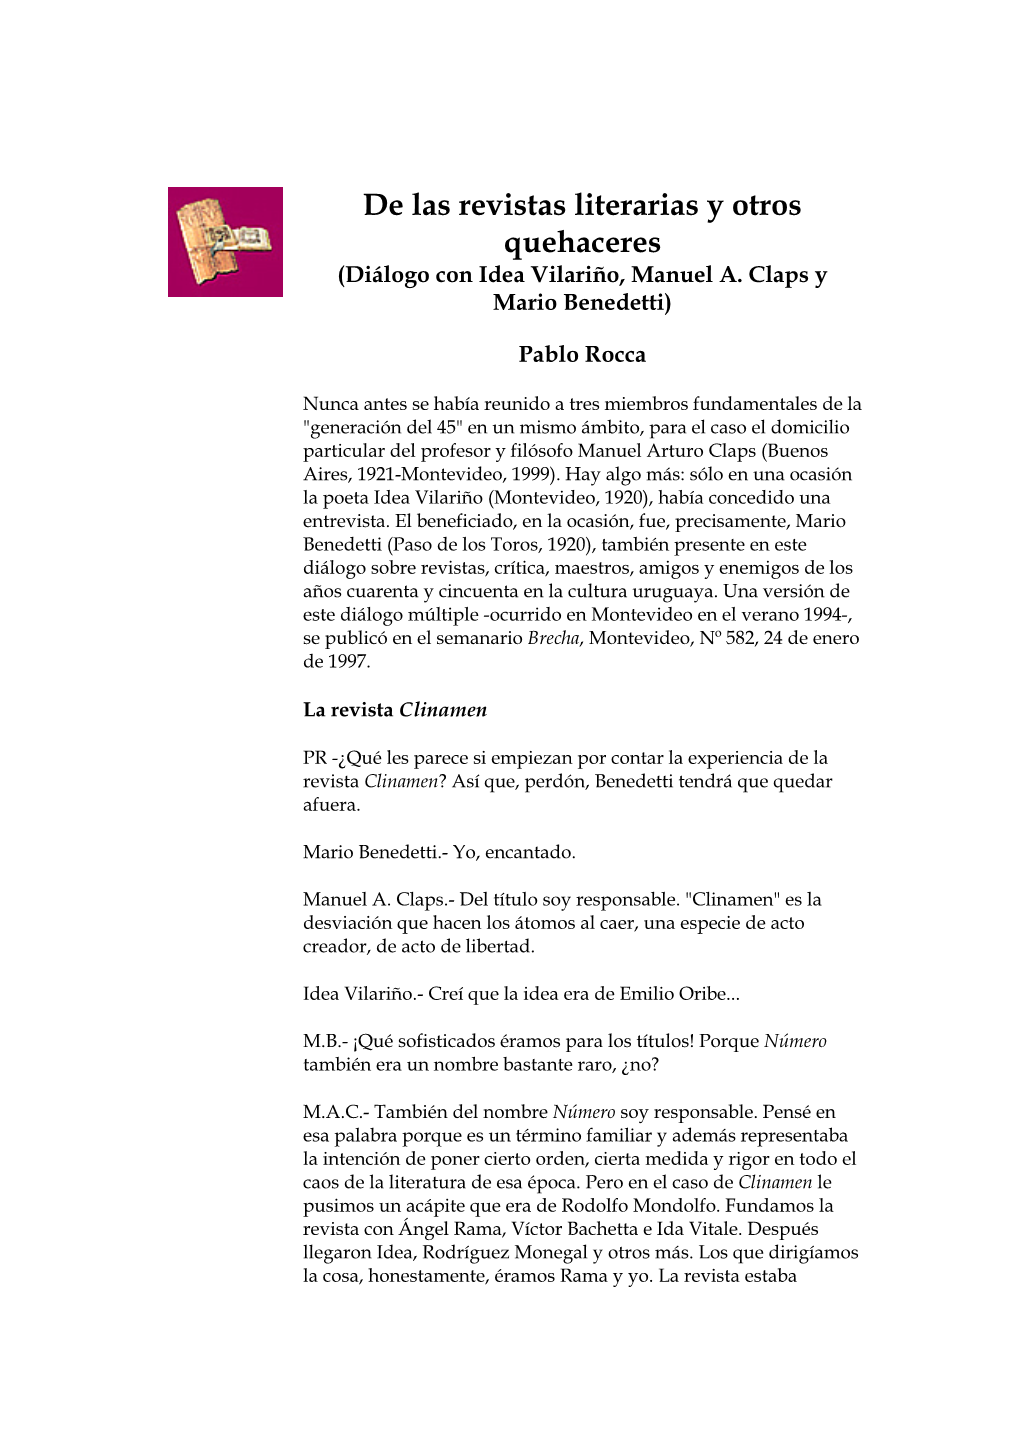 De Las Revistas Literarias Y Otros Quehaceres (Diálogo Con Idea Vilariño, Manuel A